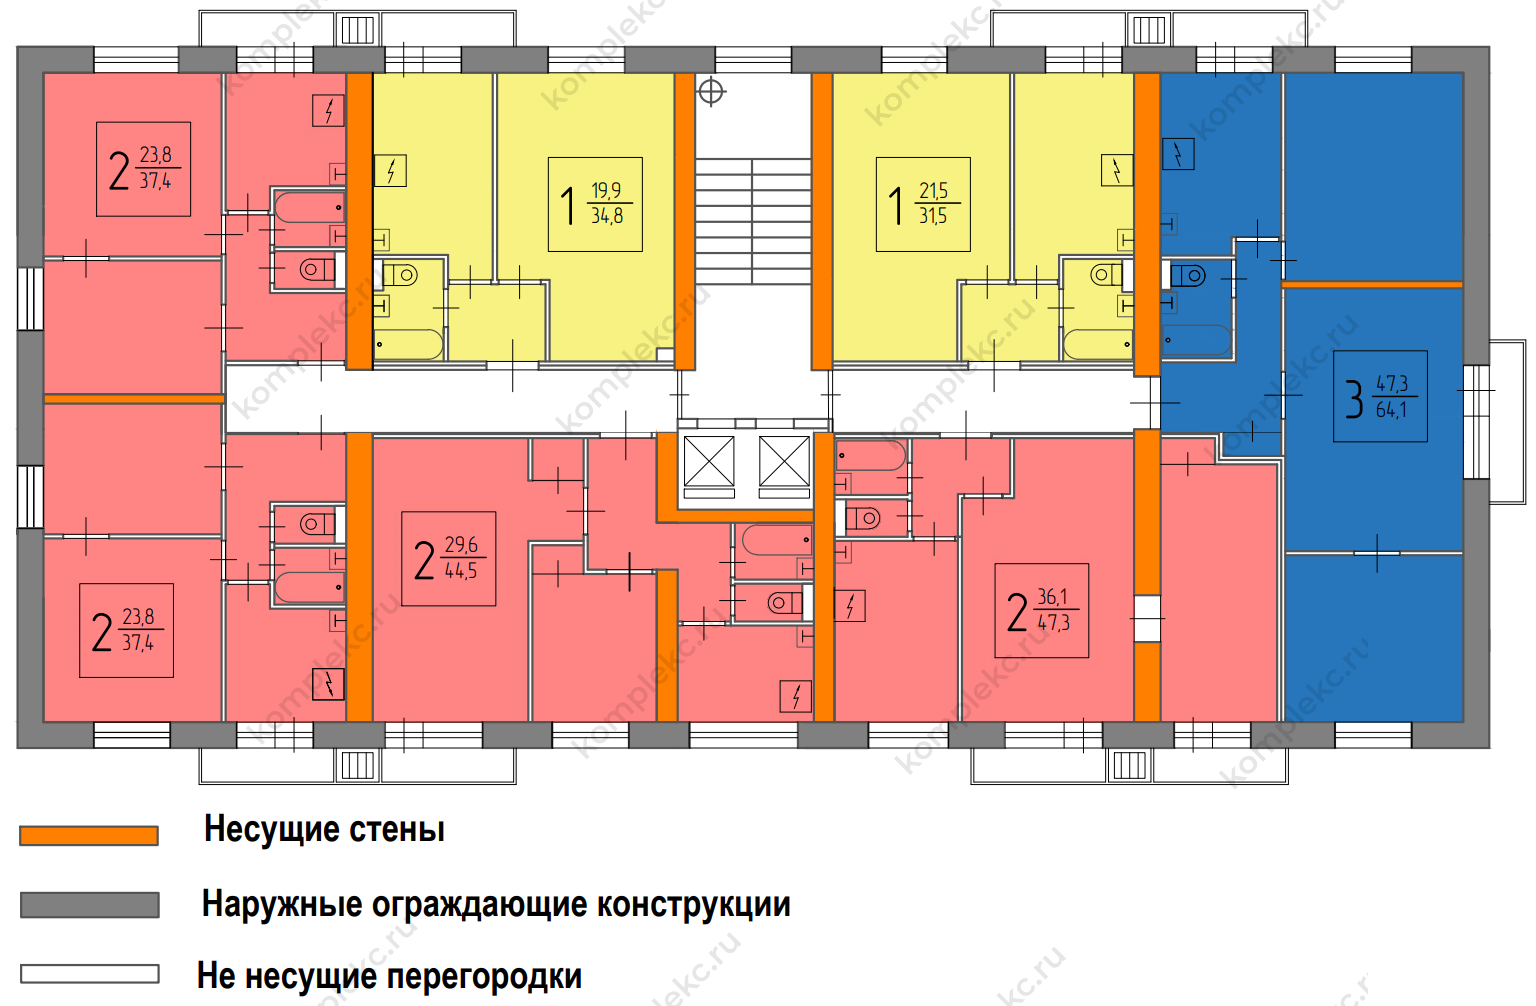 План этажа серии дома II-18